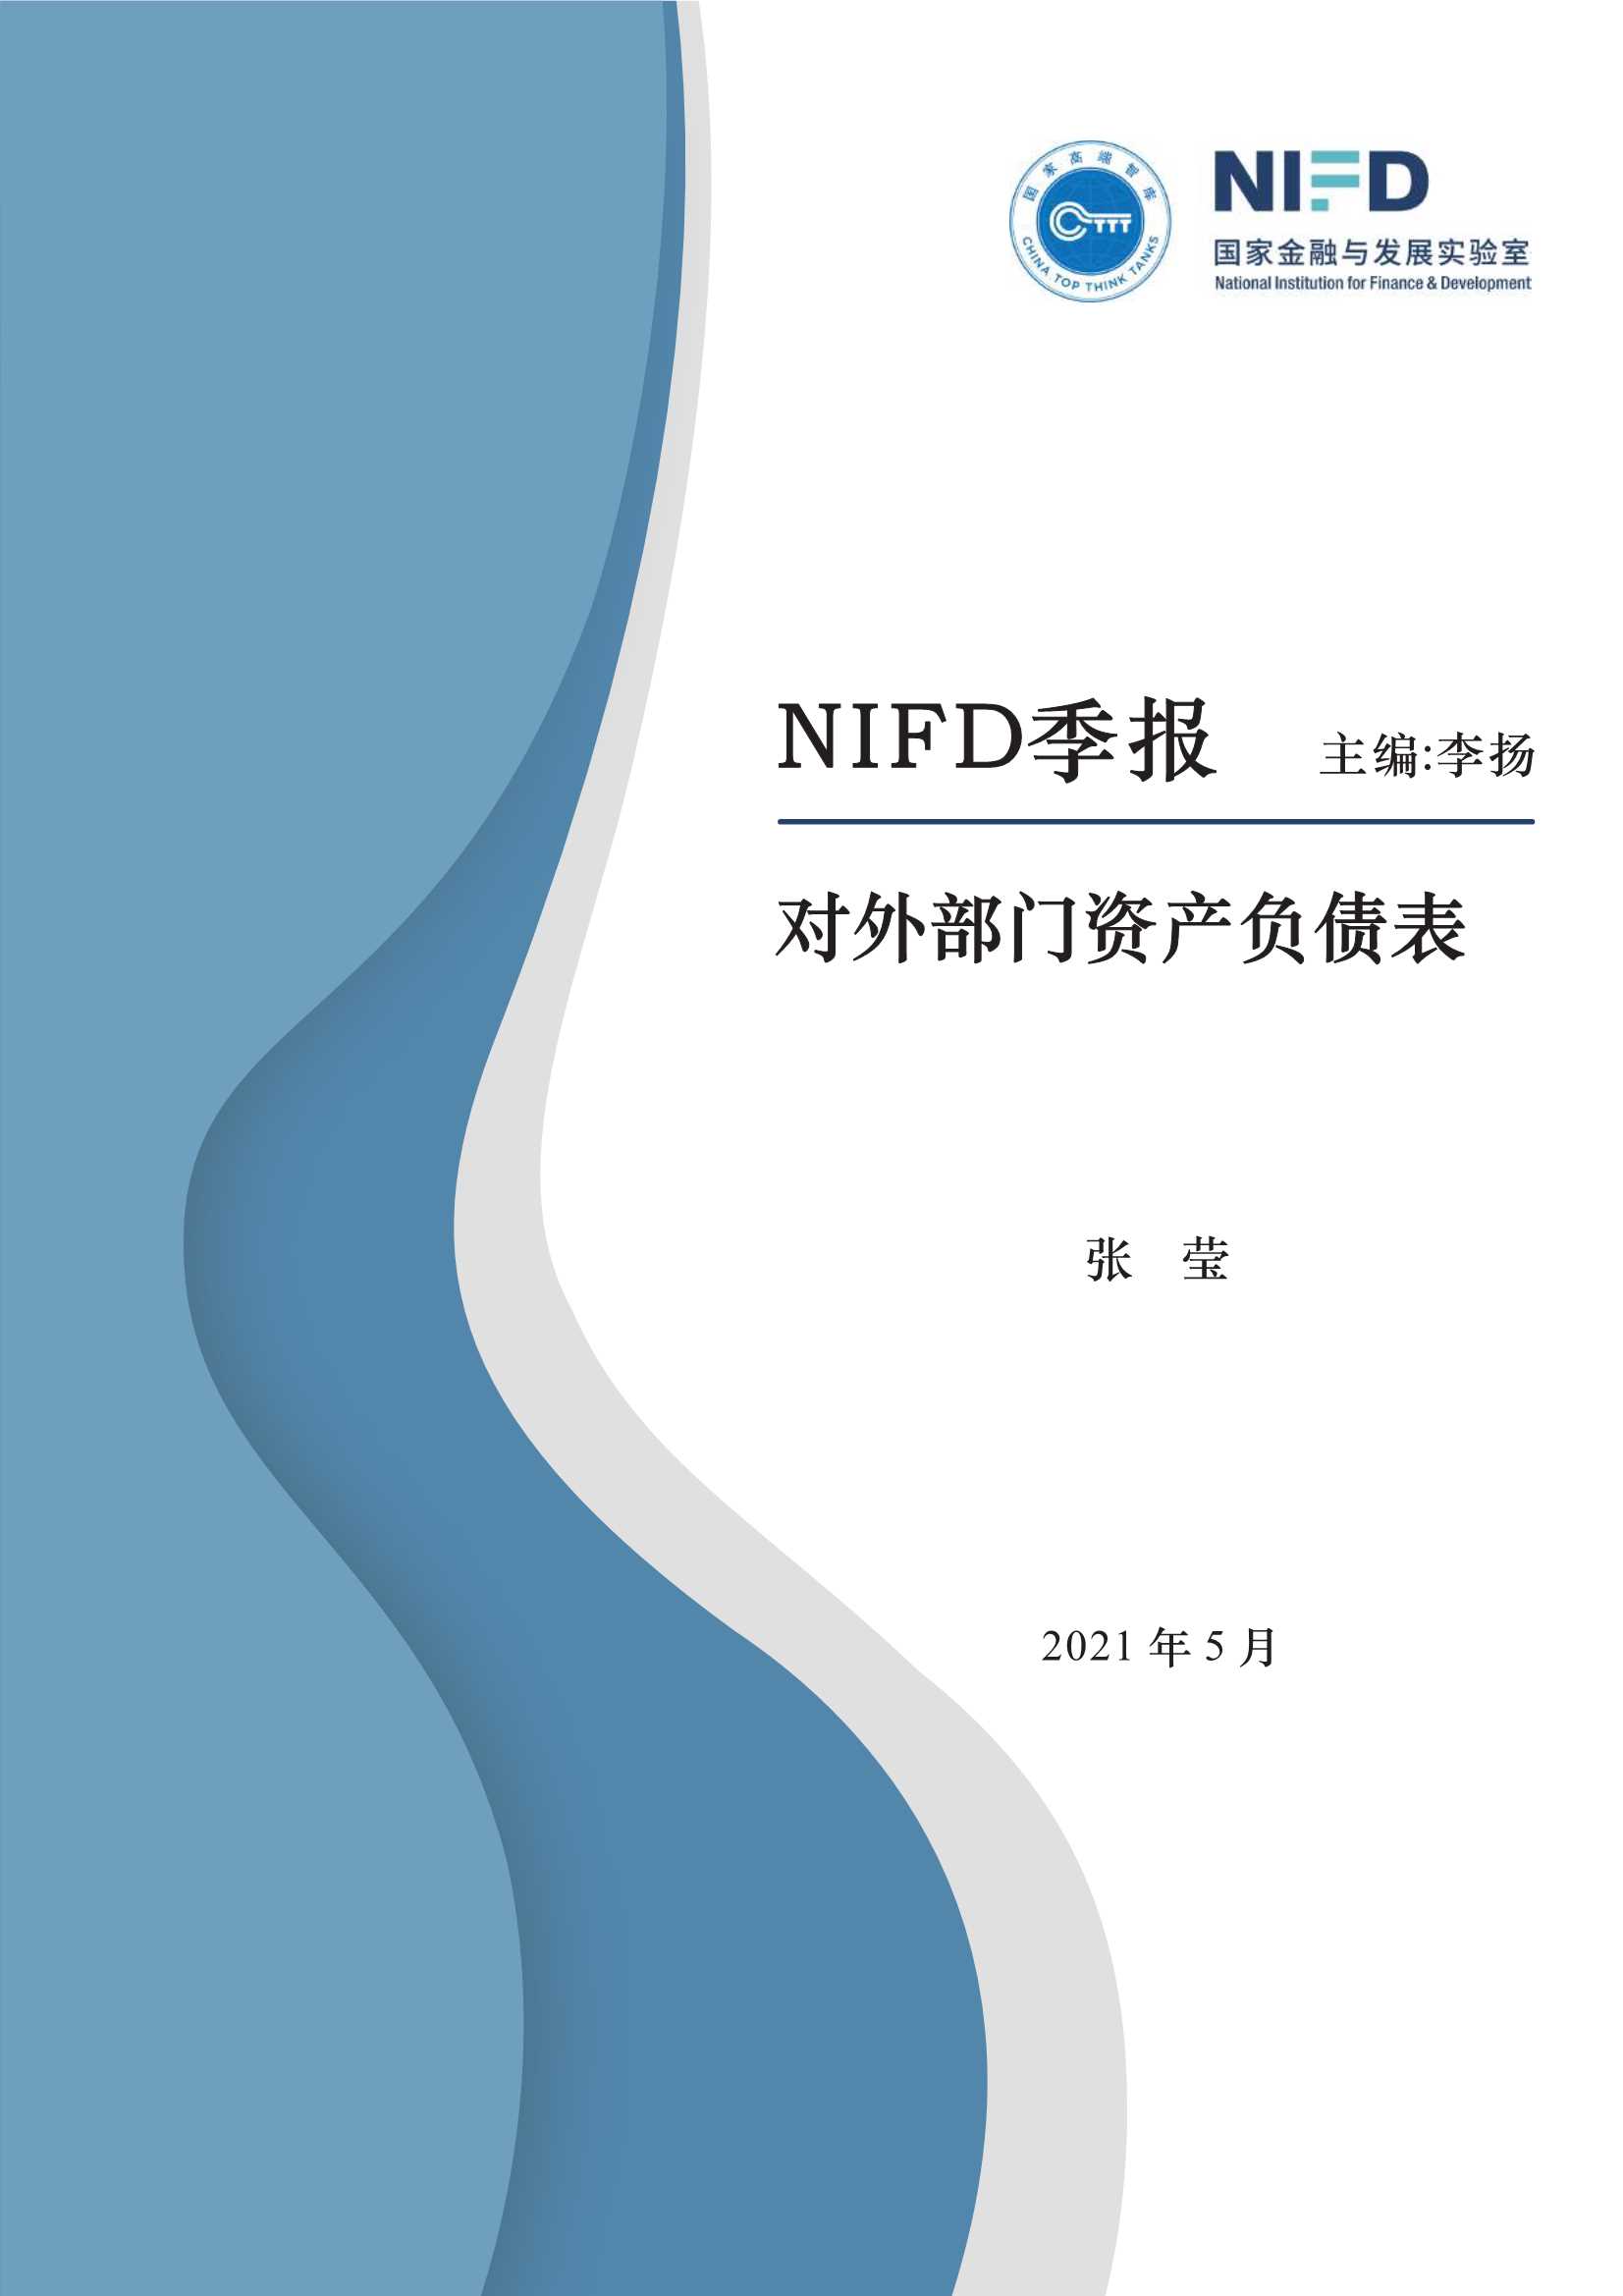 NIFD-2021Q1对外部门资产负债表-2021.05-19页